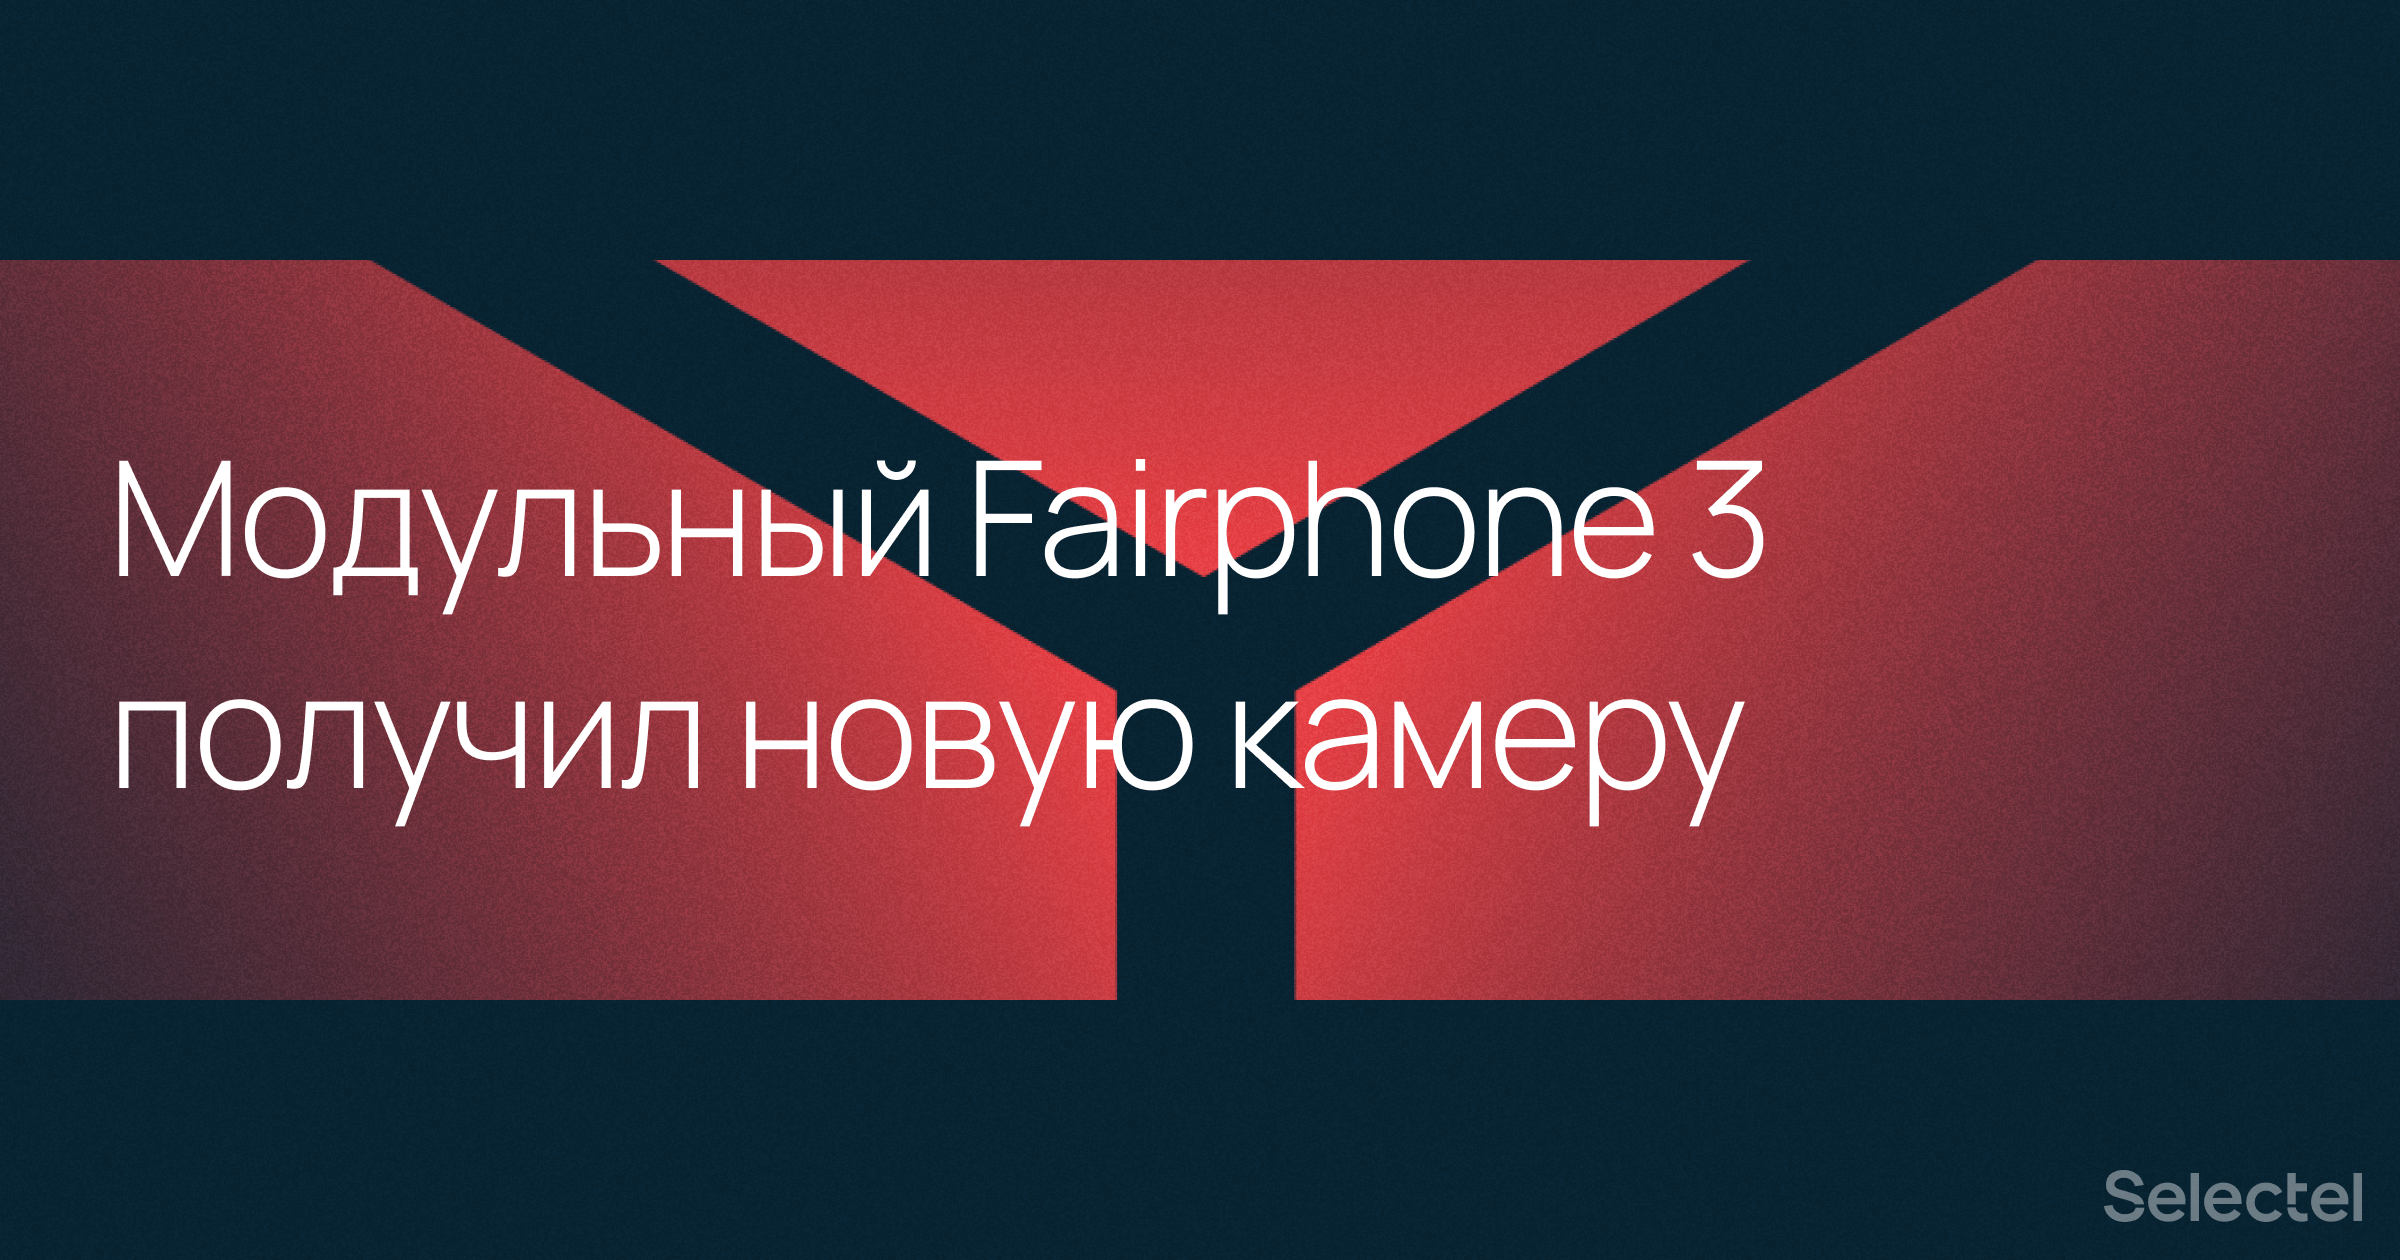 Модульный телефон Fairphone 3 получил обновленную камеру - 1